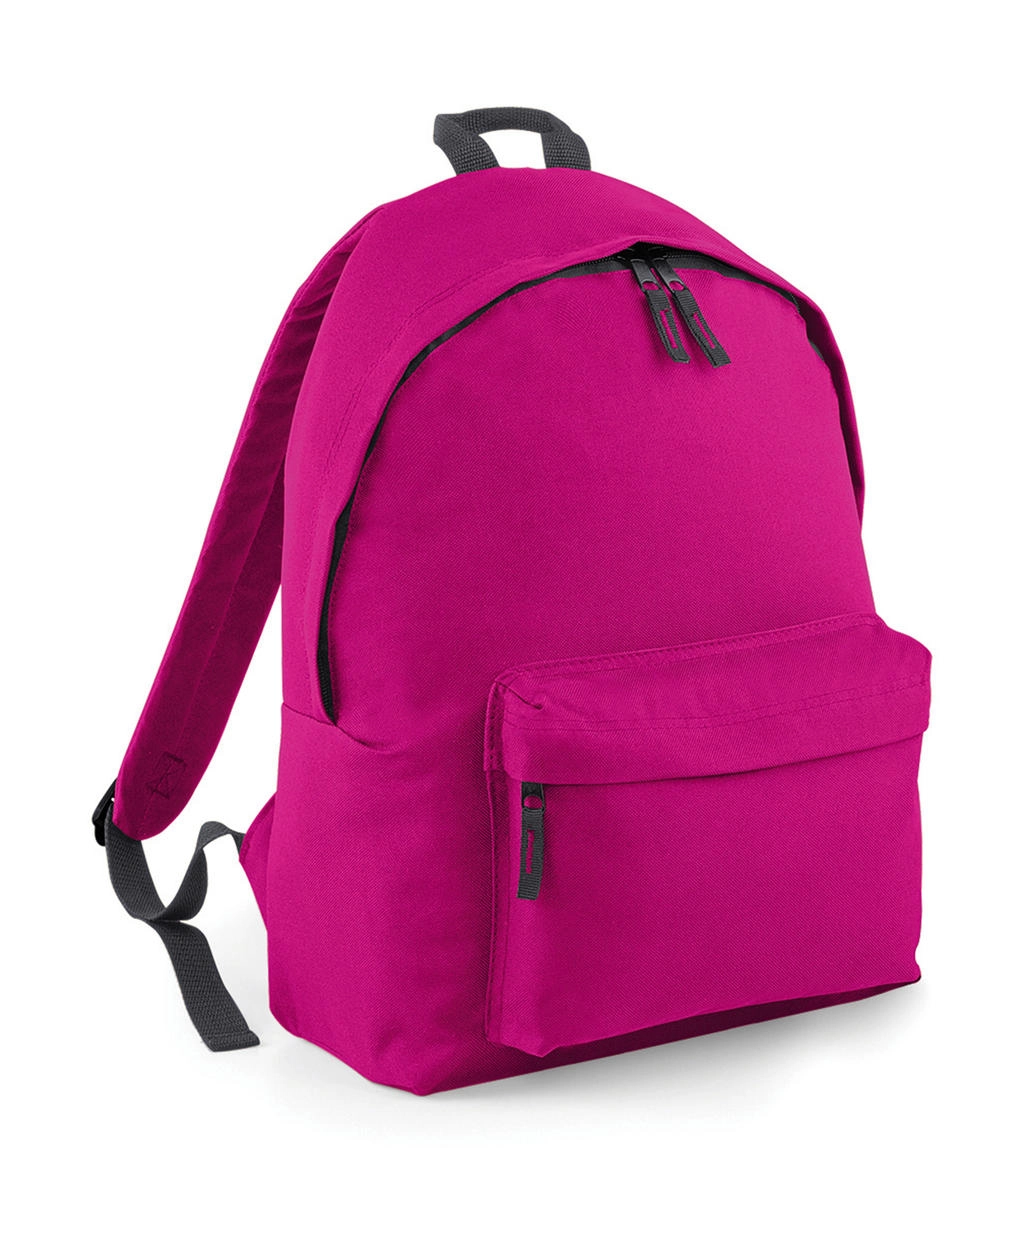 Original Fashion Backpack zum Besticken und Bedrucken in der Farbe Fuchsia/Graphite Grey mit Ihren Logo, Schriftzug oder Motiv.